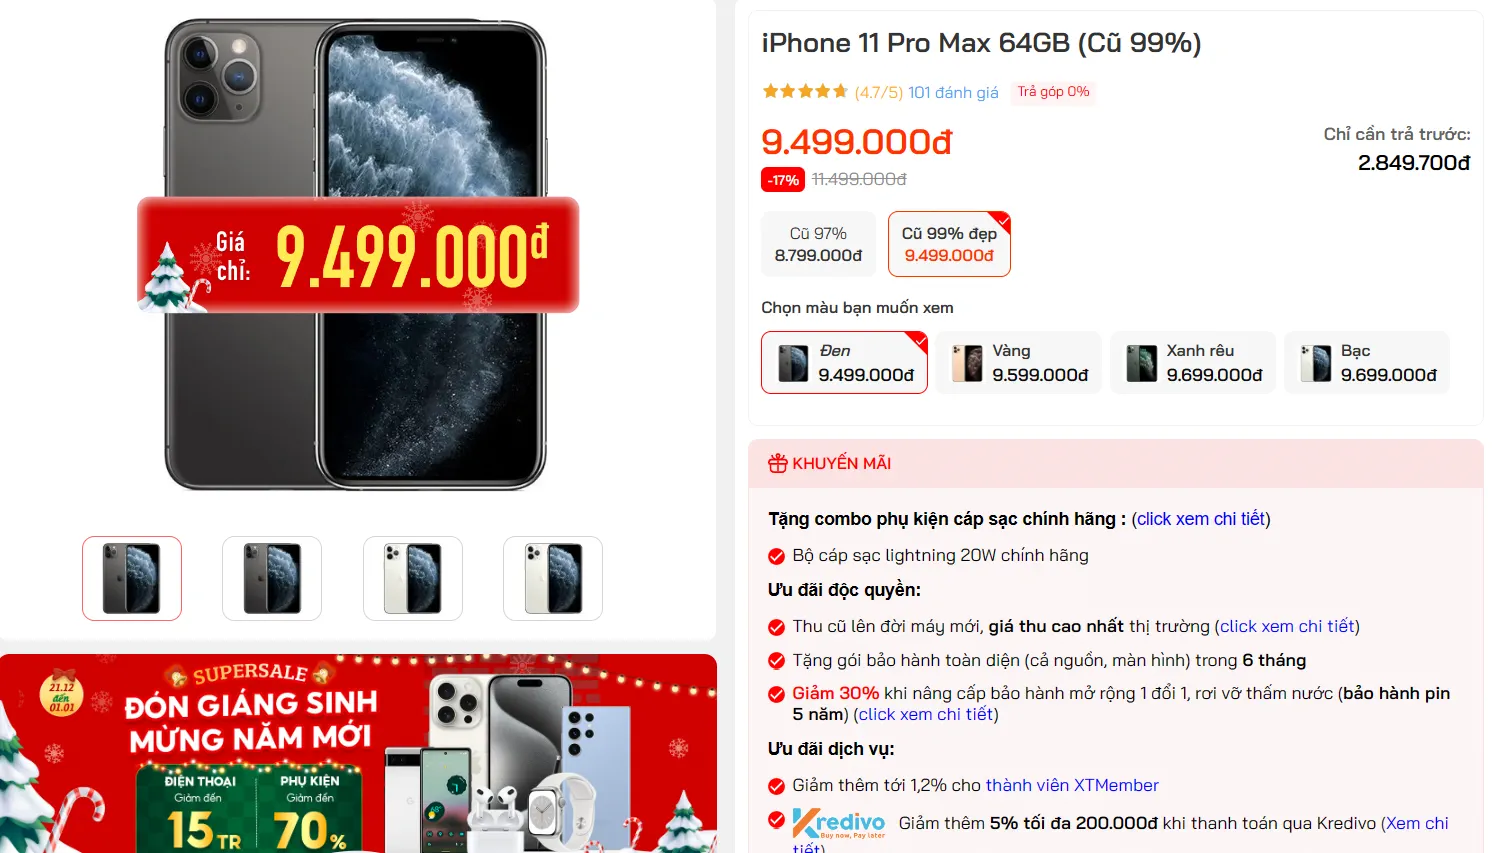 iPhone 11 series giảm giá “sập sàn” những ngày cuối năm, có mẫu giảm gần 4 triệu đồng